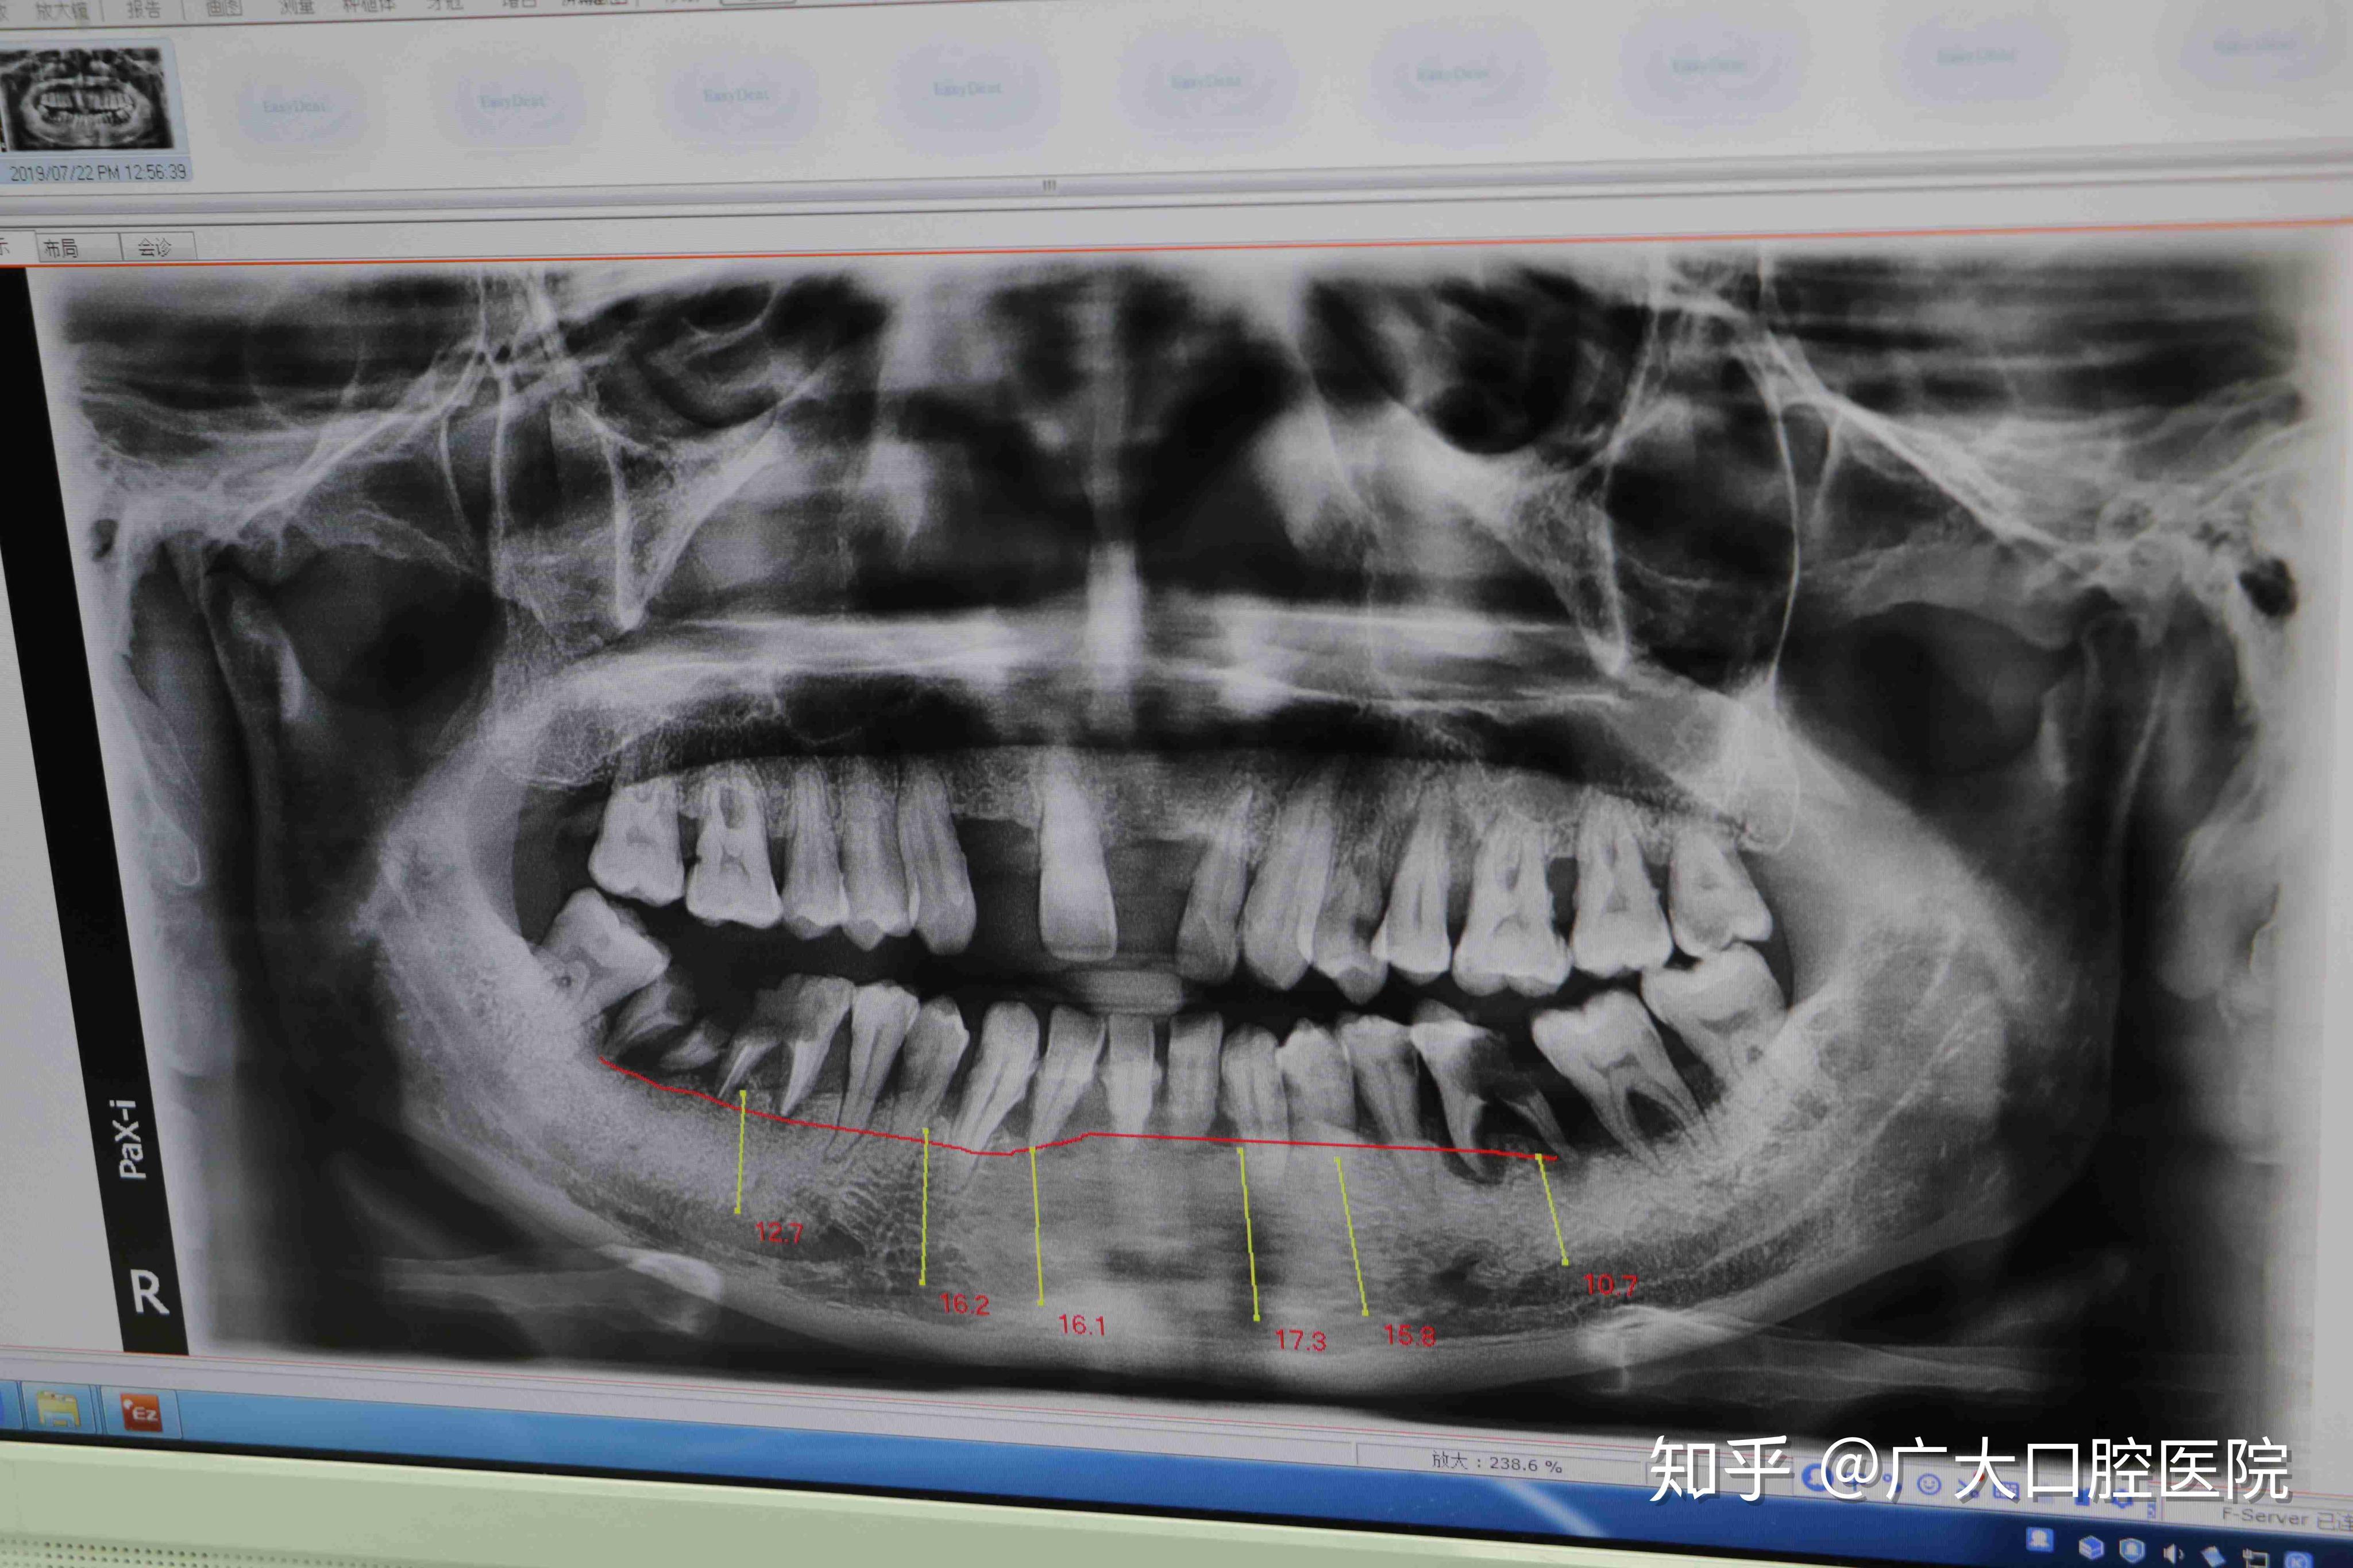 20岁的女生，矫正牙齿戴牙套，还要拔四颗牙是什么感觉啊，担心会不会有后遗症！？ - 知乎